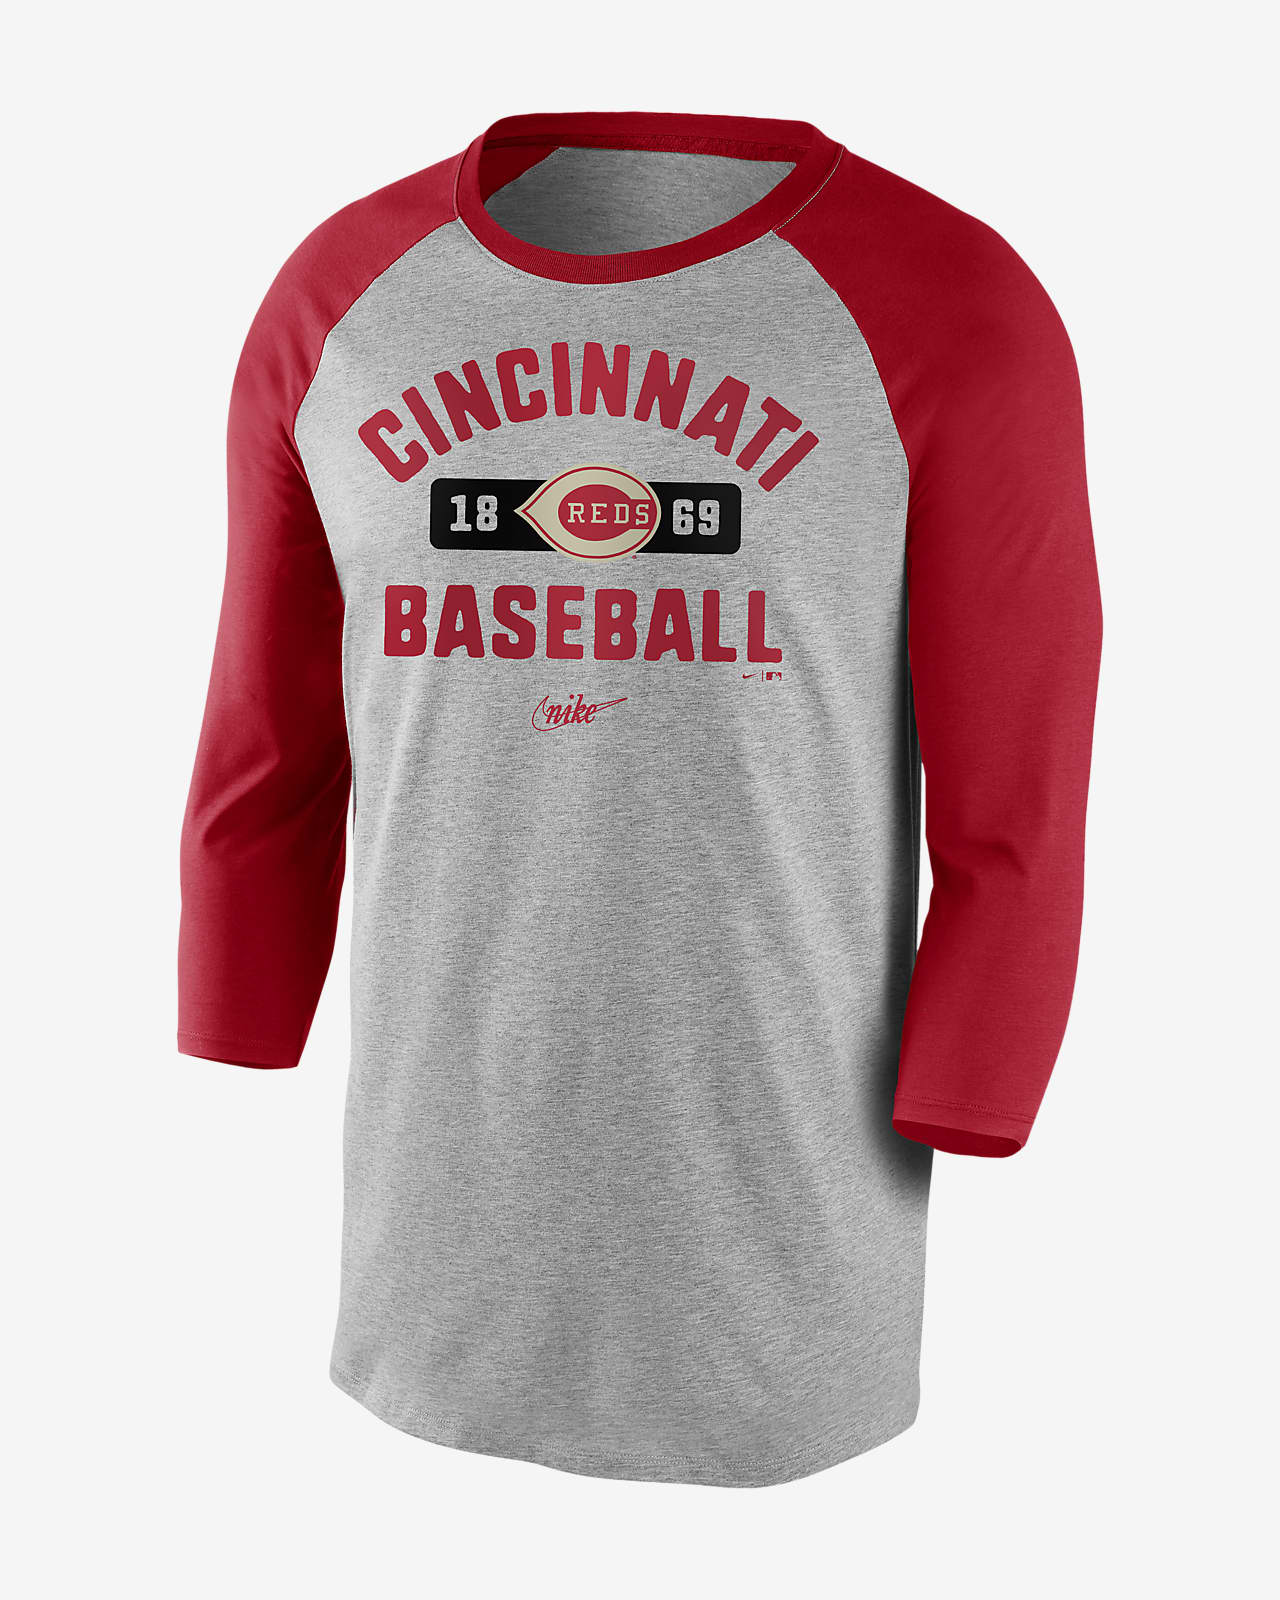 Nike Cooperstown Vintage Tri-Blend Raglan (MLB Cincinnati Reds) Men's 3/4-Sleeve T-Shirt